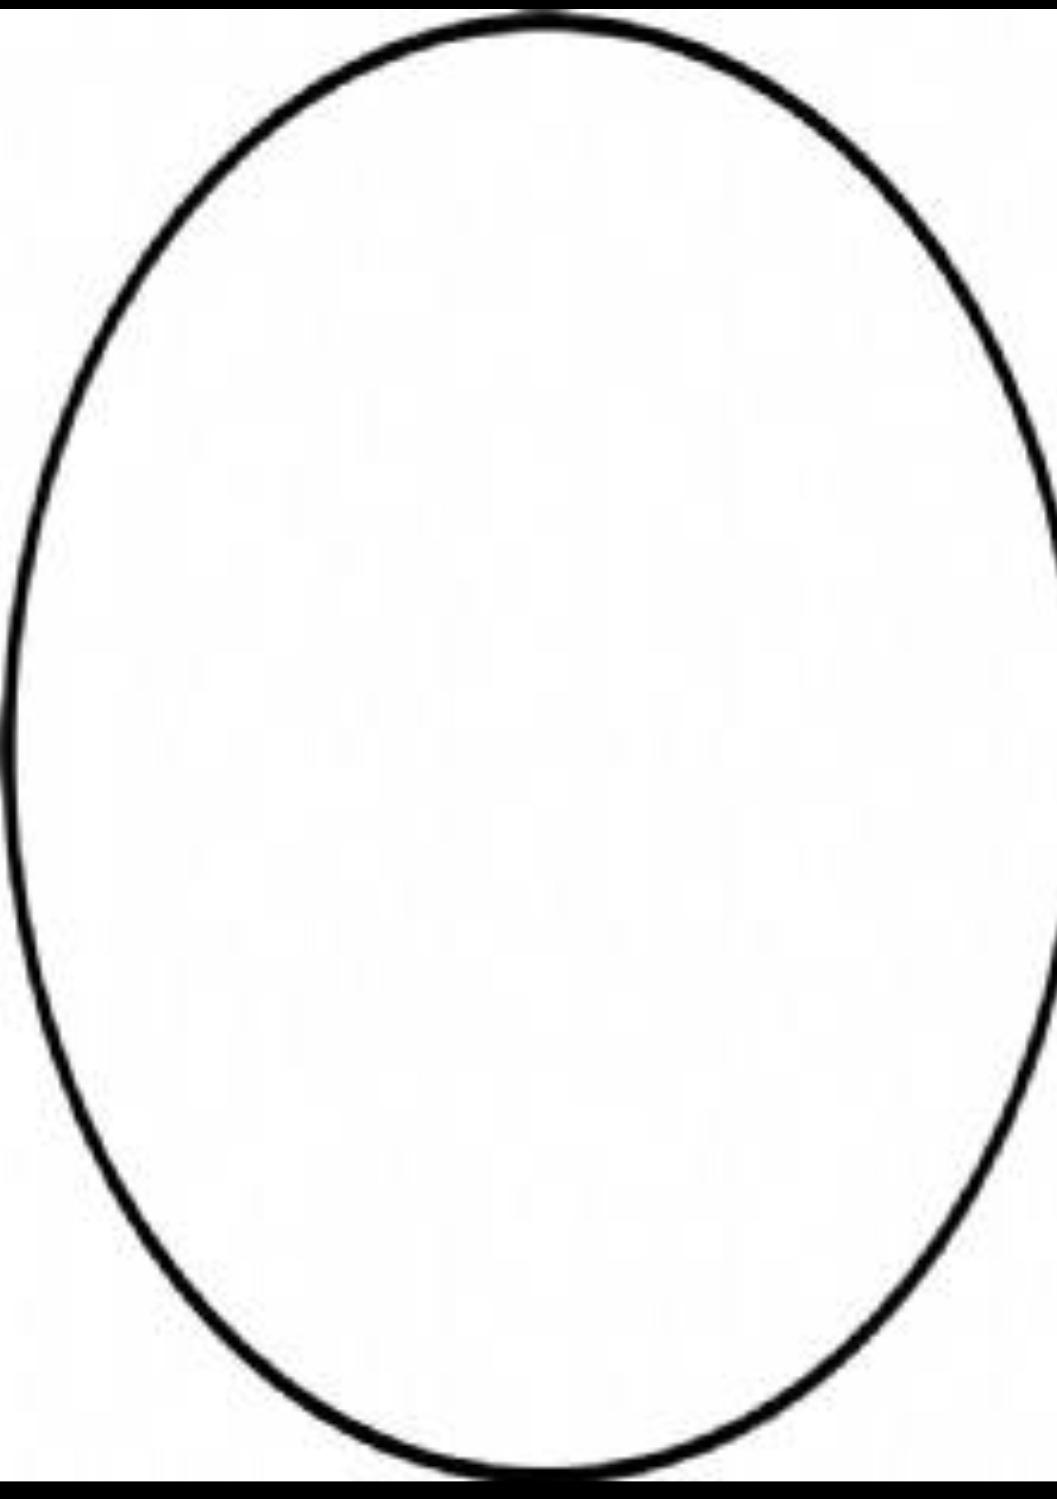 木工画椭圆形简单方法-图库-五毛网